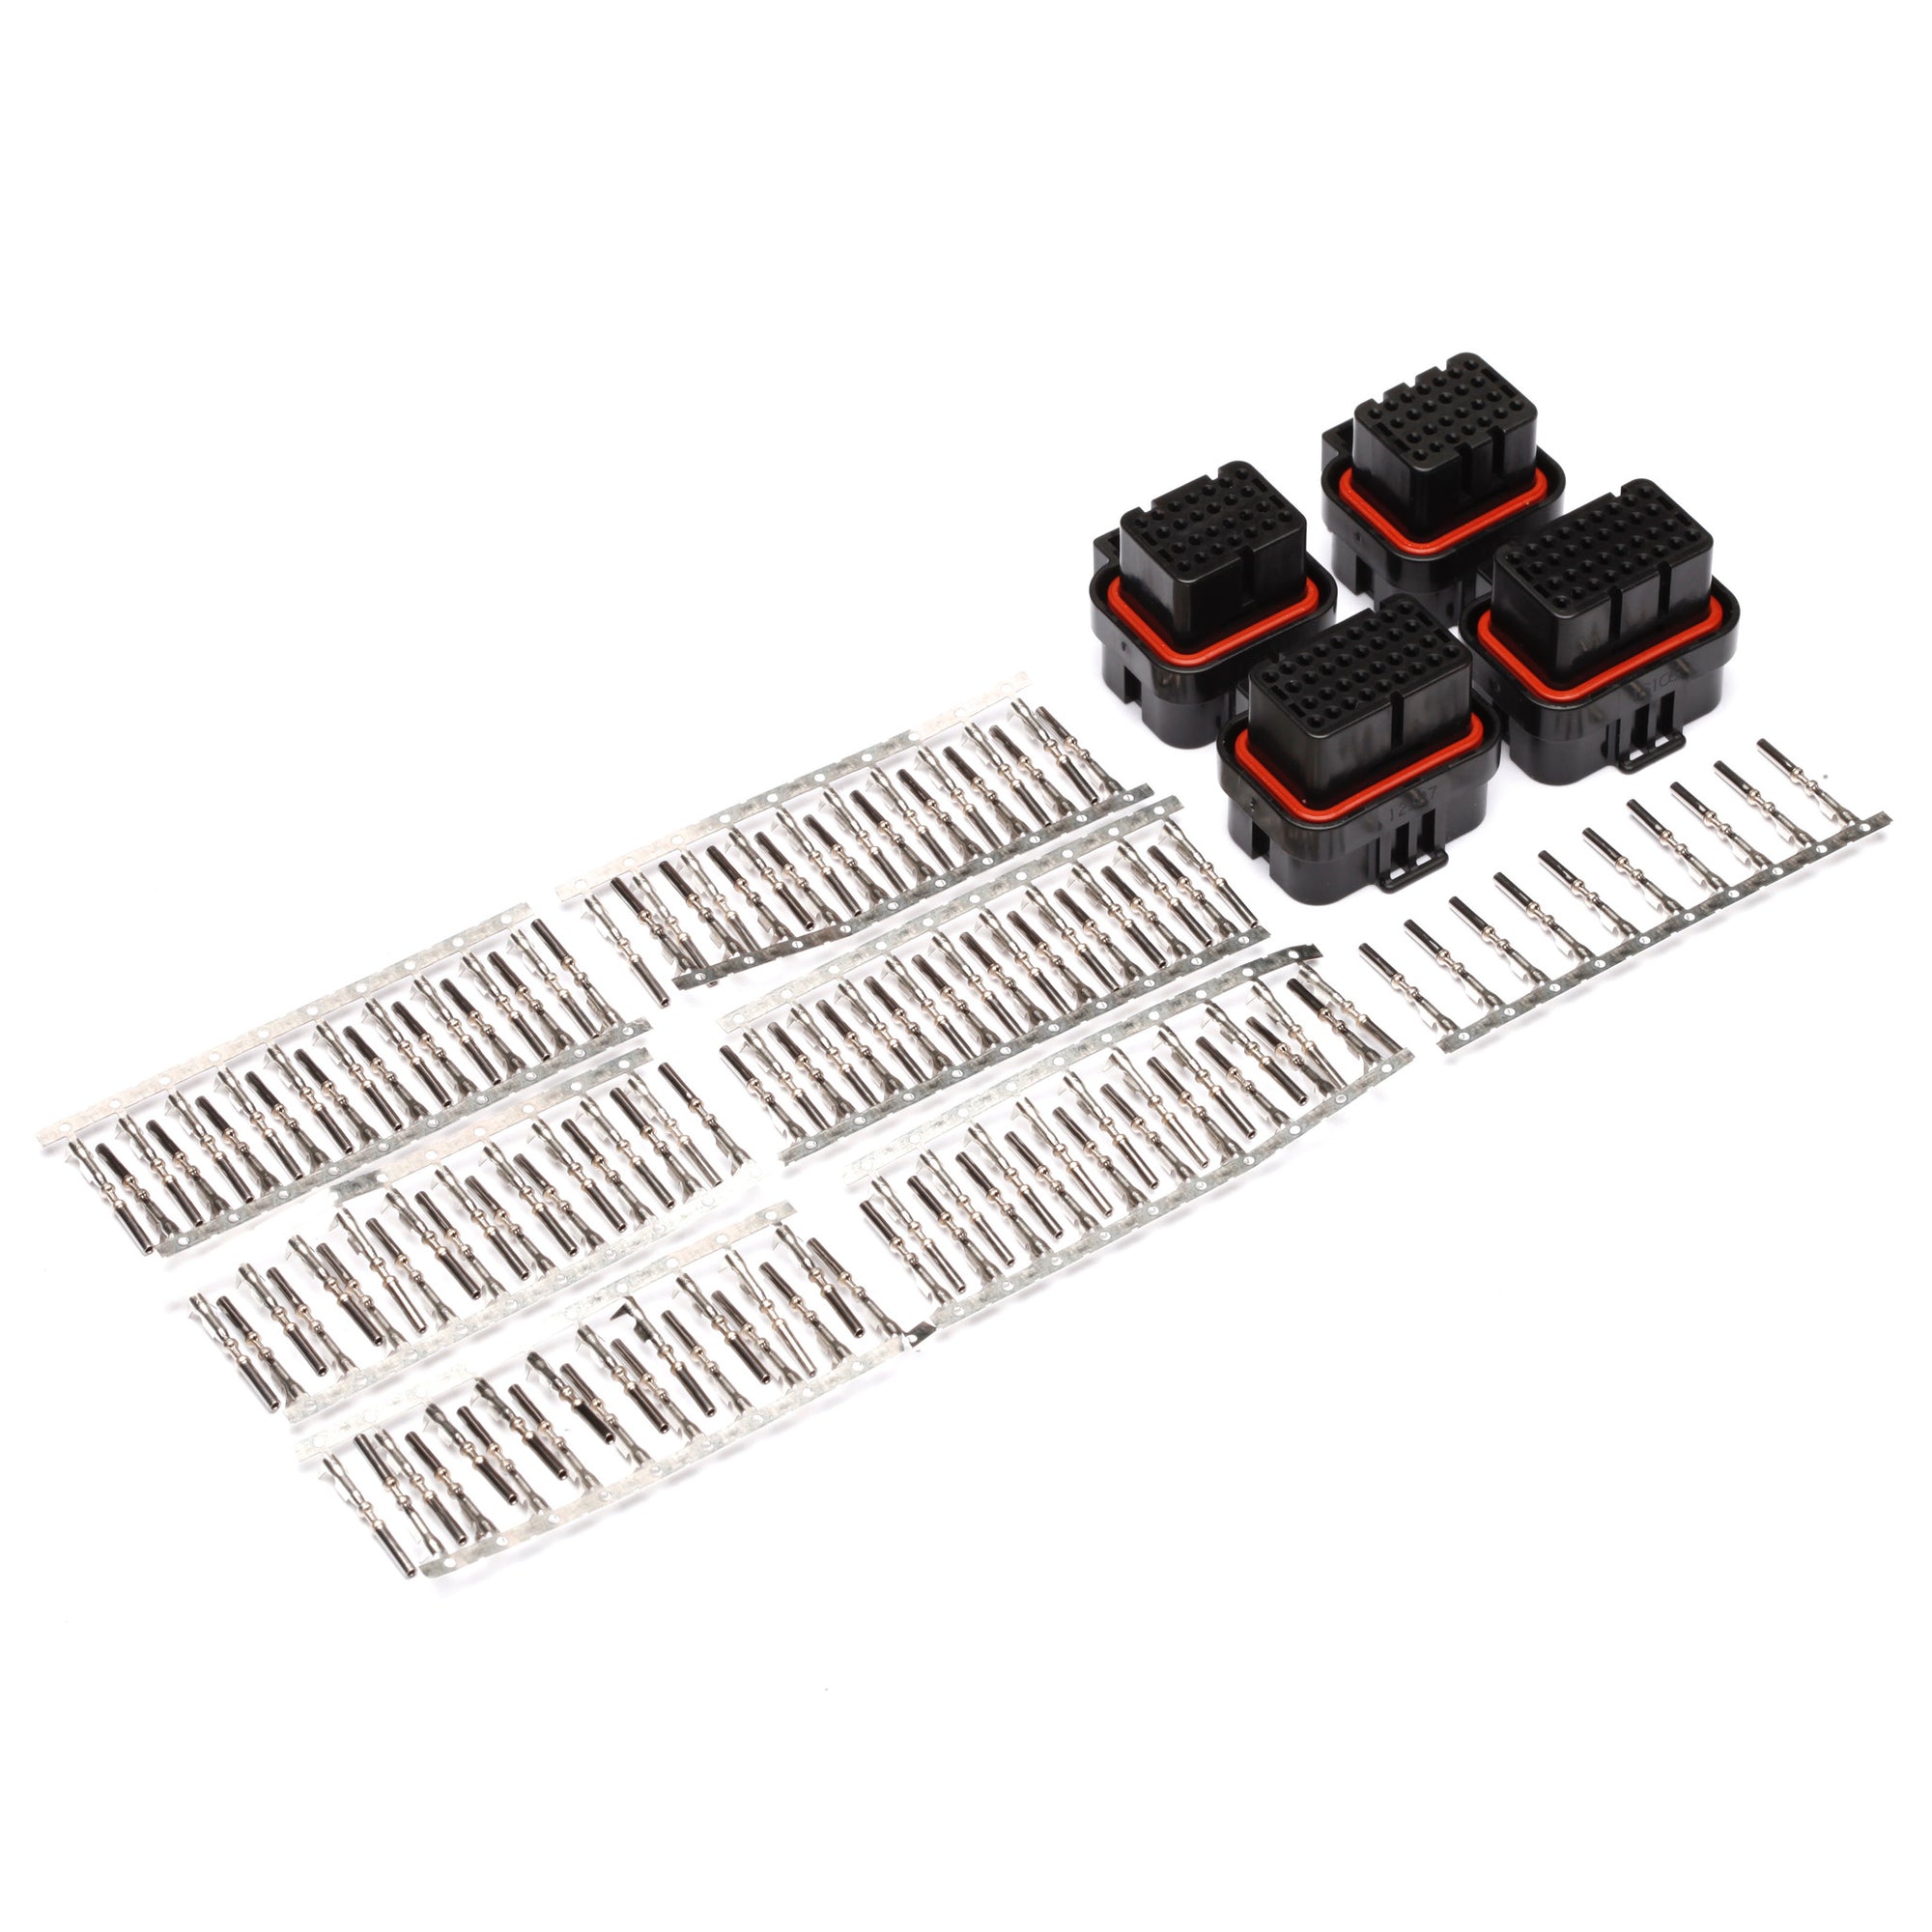 Connectors - MoTeC M150 Connector Kit